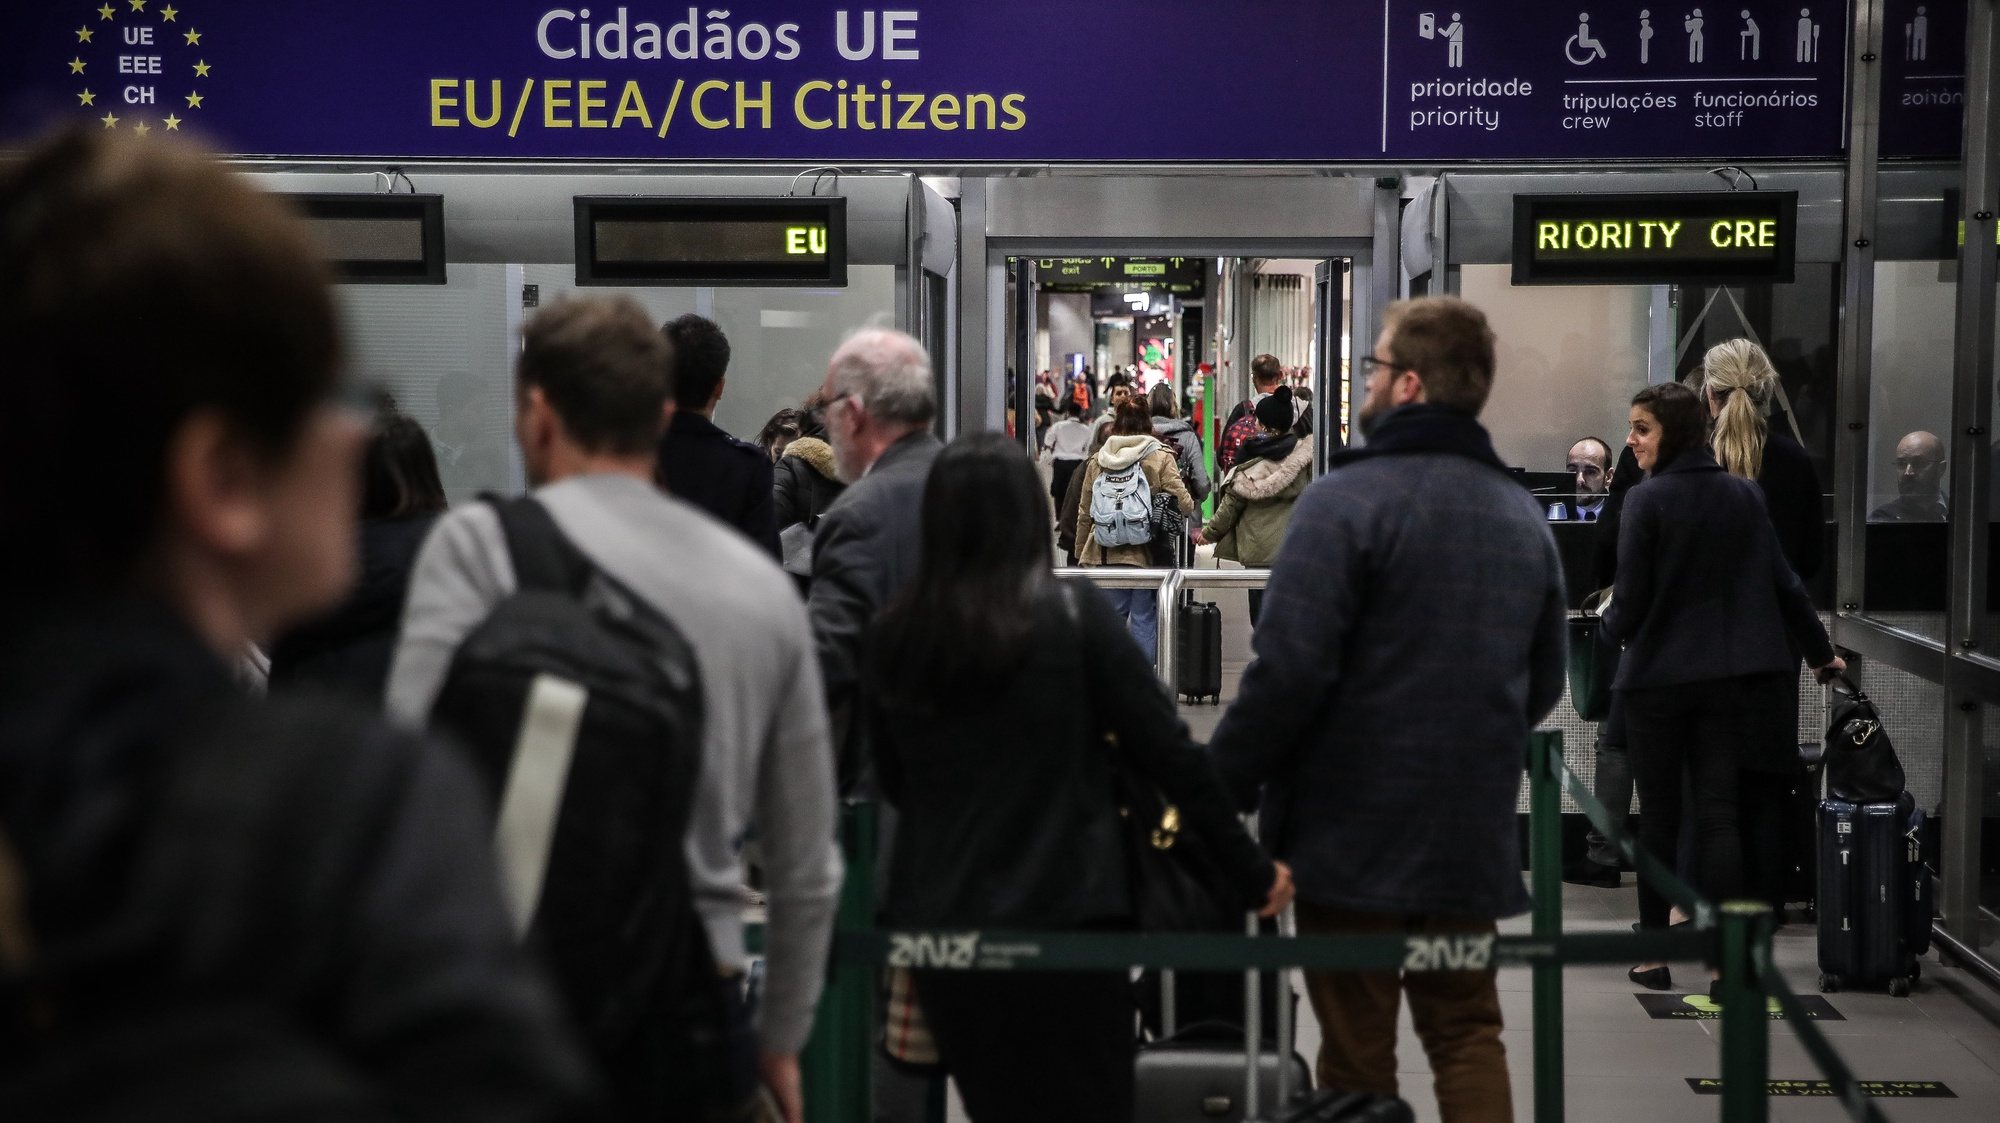 Cidadãos utilizam a nova área de controlo de chegadas do Serviço de Estrangeiros e Fronteiras (SEF) no Aeroporto Humberto Delgado, em Lisboa, 10 de fevereiro de 2020.  MÁRIO CRUZ/LUSA